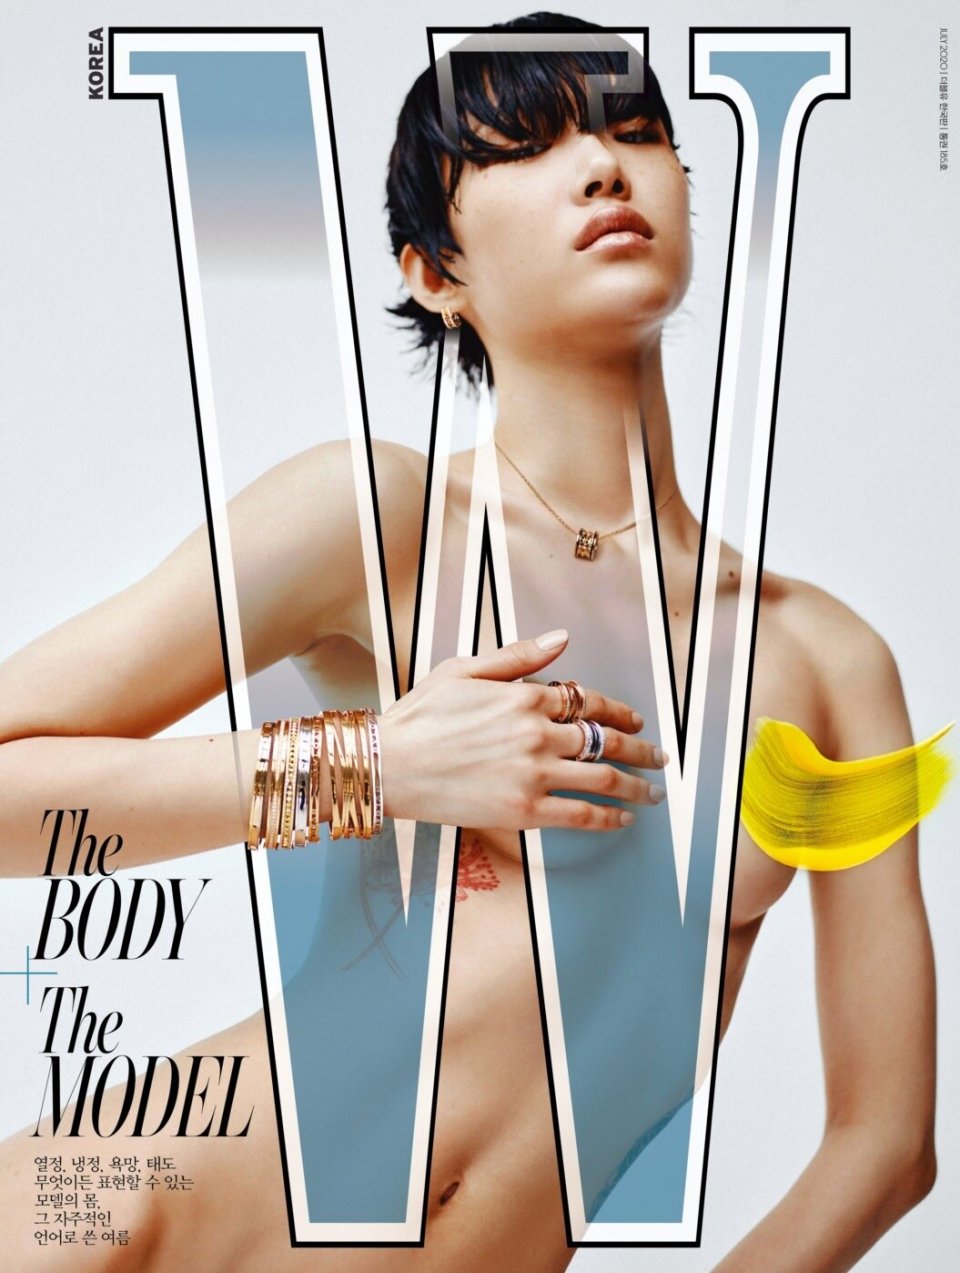 裸体文化盛行 韩国顶尖模特崔素拉创意出镜 登封韩国w杂志7月 Nestia